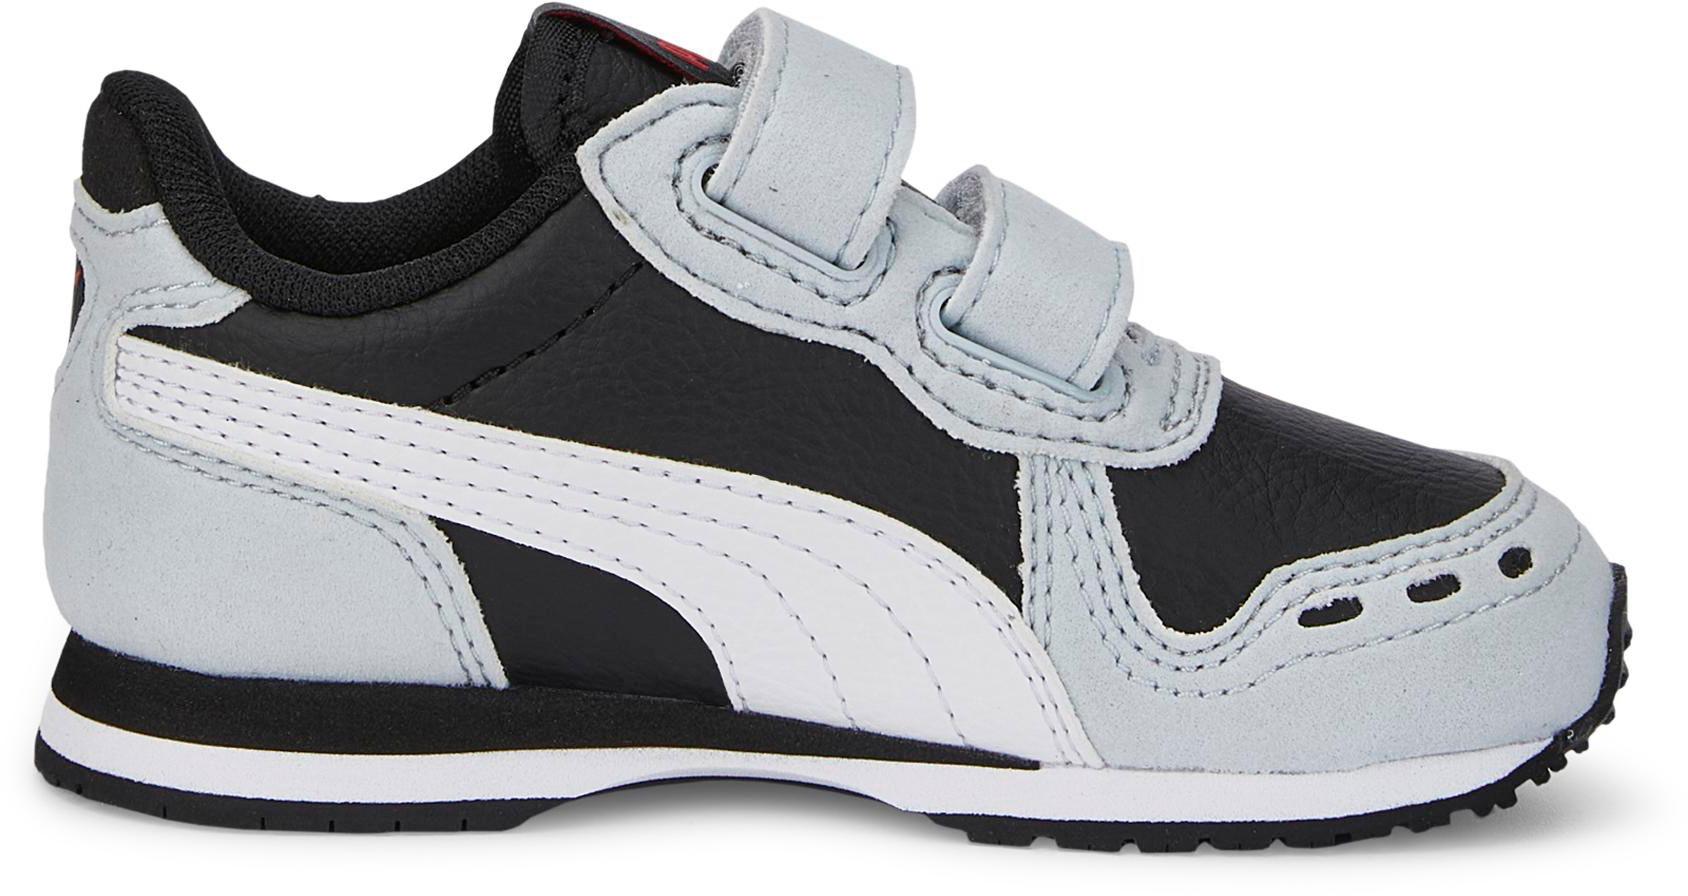 PUMA Cabana Racer SL 20 kaufen V SportScheck black-puma Kinder gray white-platinum Sneaker Online Shop puma im von